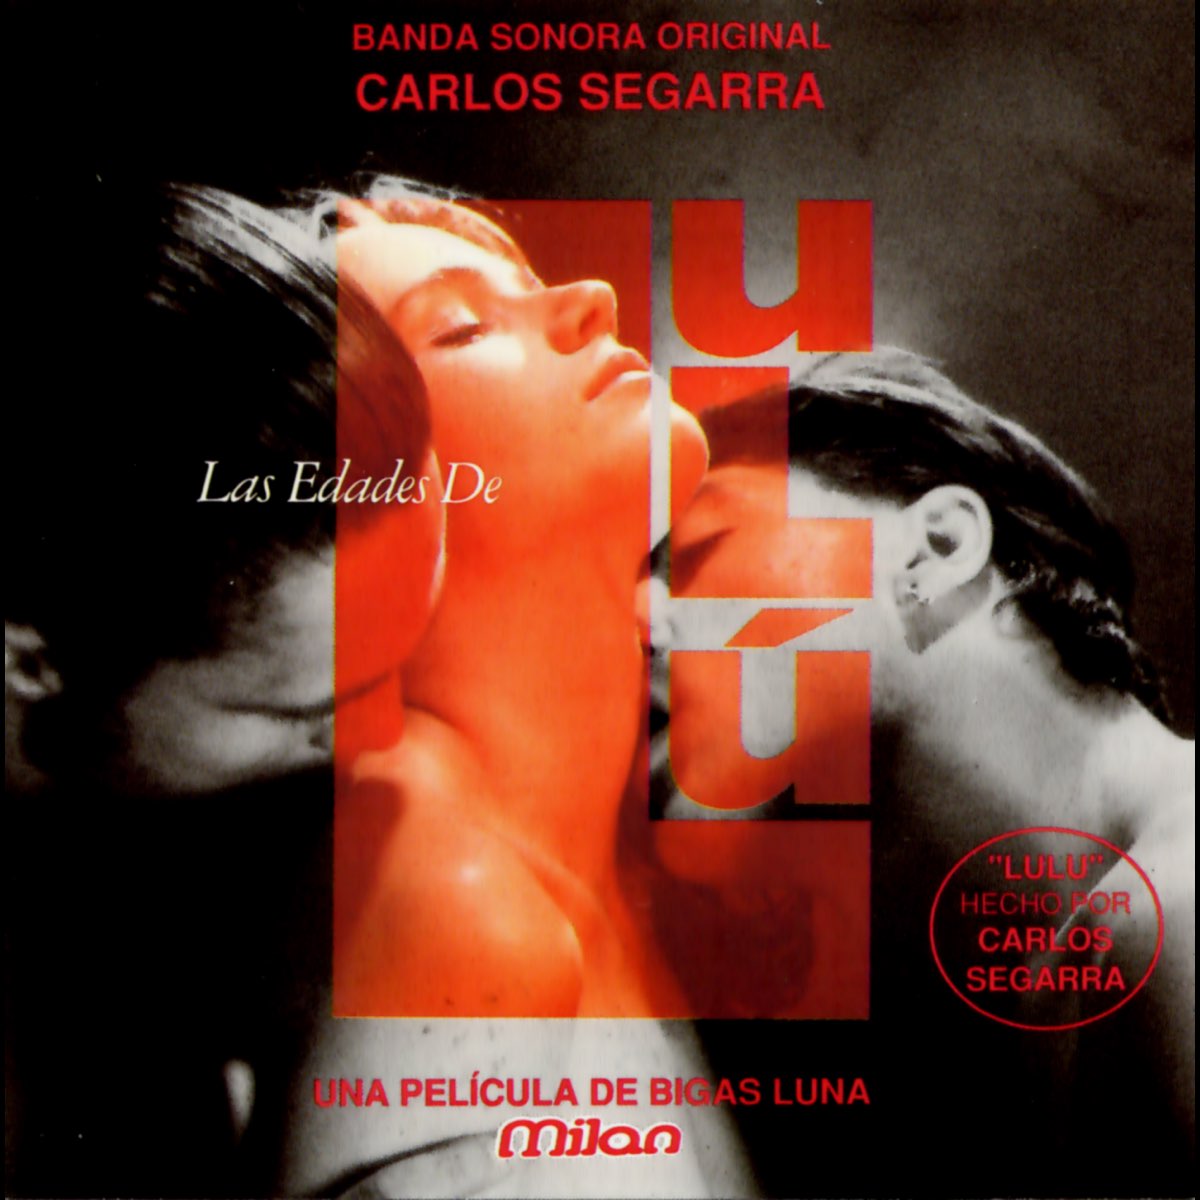 Las Edades de Lulú (Bigas Luna's Original Motion Picture Soundtrack) by  Carlos Segarra on Apple Music